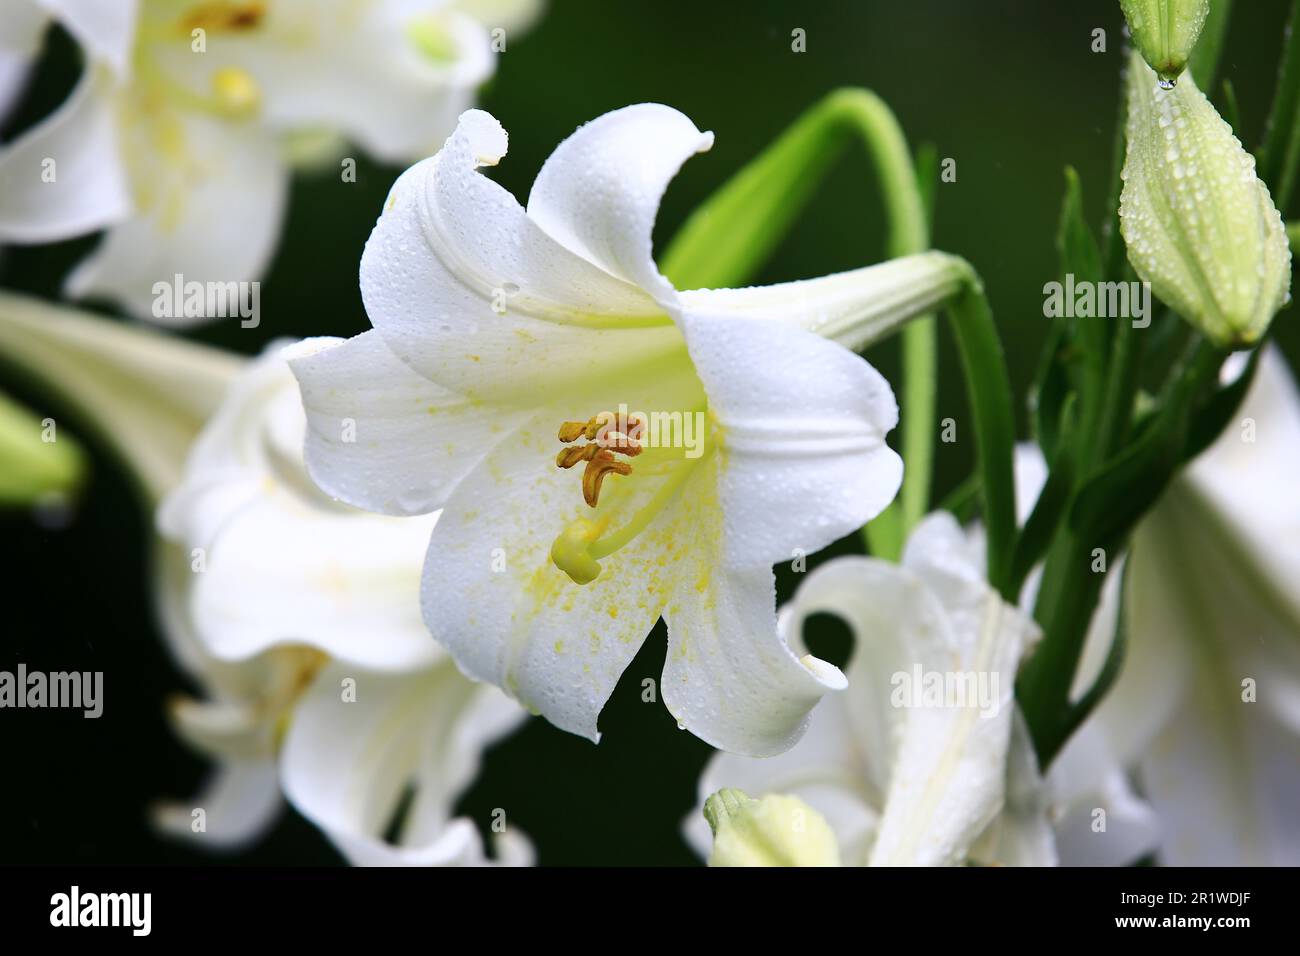 Fioritura del giglio di Longflower o del giglio di Pasqua o dei fiori bianchi del giglio della tromba con le gocce di pioggia, primo piano dei fiori bianchi del giglio che fioriscono nel giardino Foto Stock